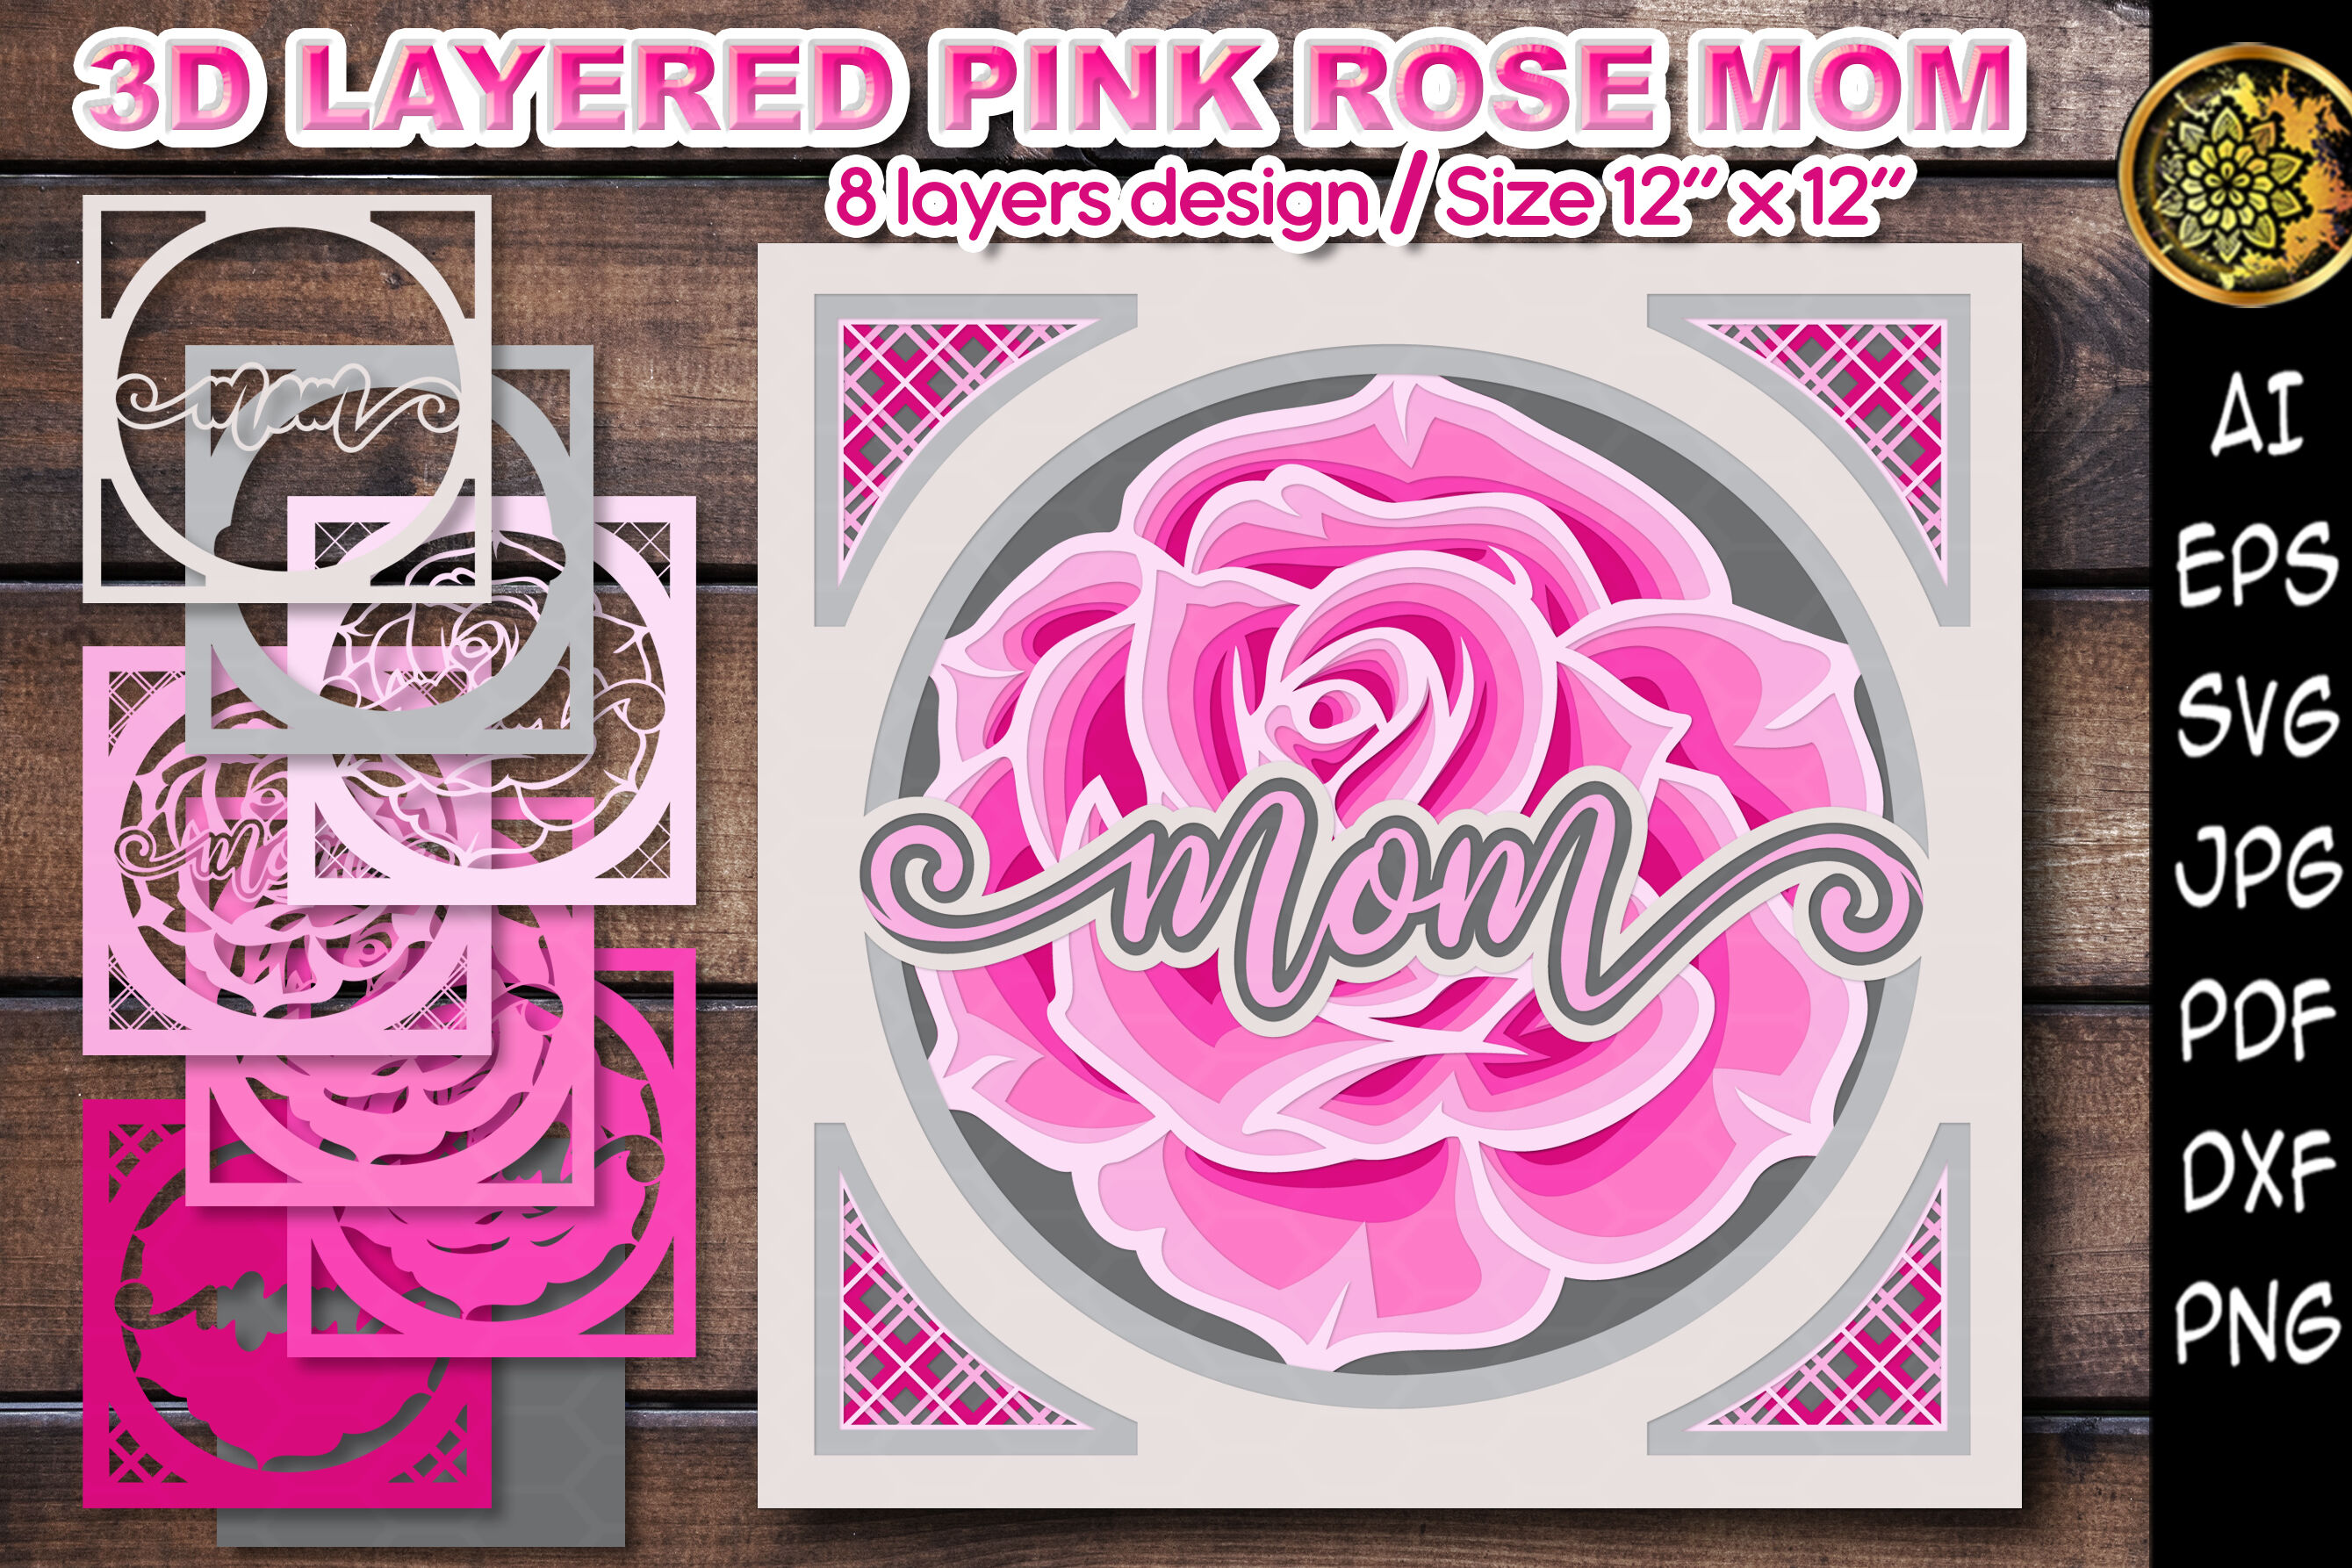 Rose Flower SVG, DXF, EPS, PNG, Love Rose SVG, Roses